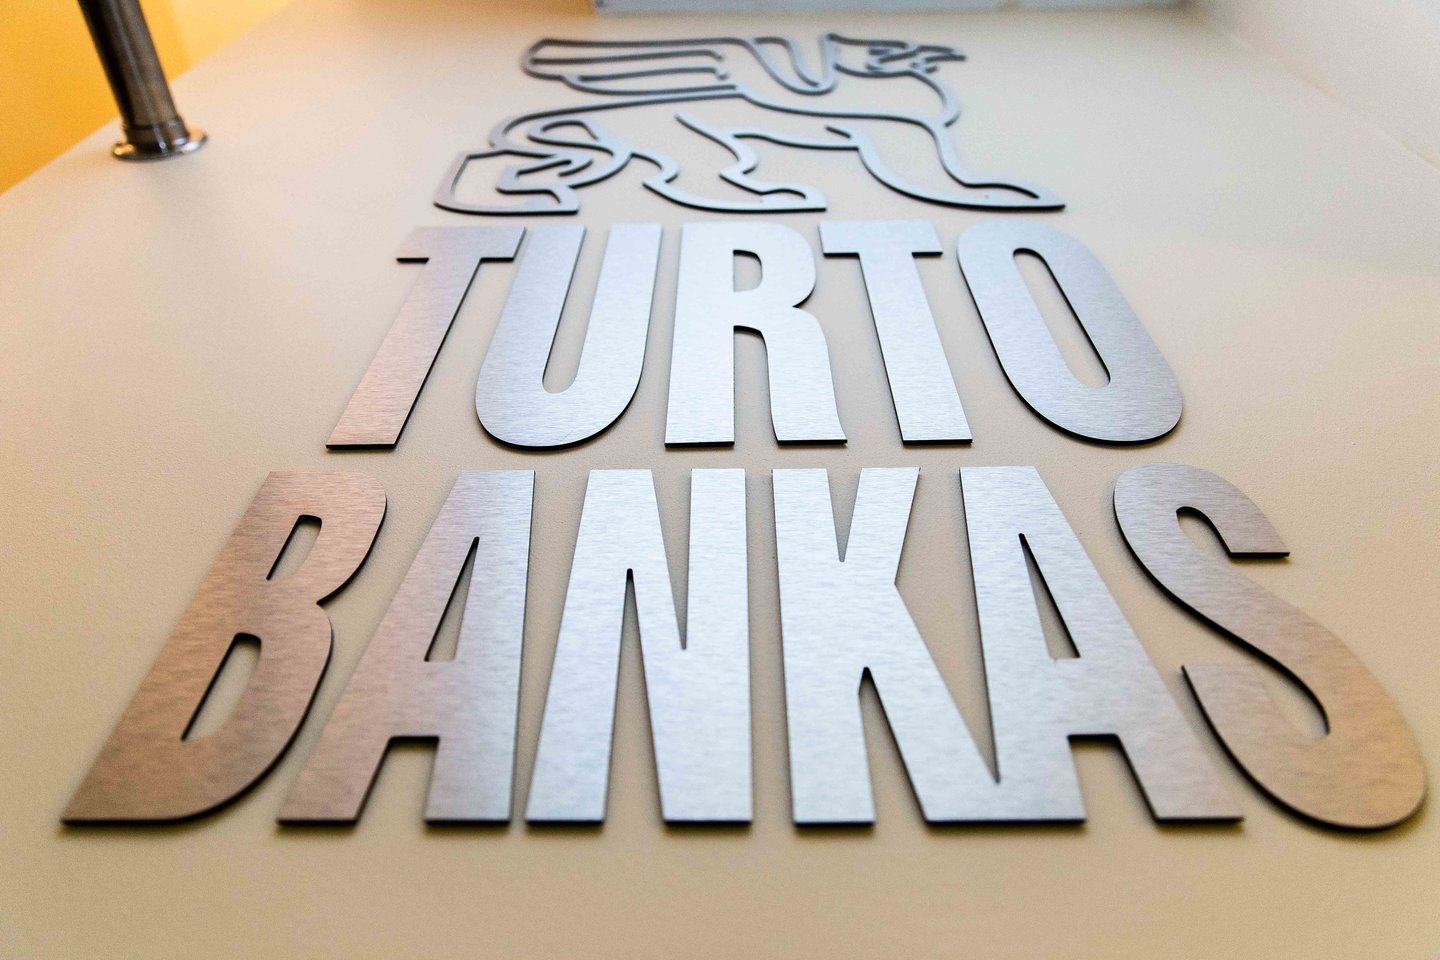 Valstybės nekilnojamąjį turtą valdanti ir jo priežiūrą užtikrinanti valstybės įmonė Turto bankas, įgyvendinant naujų pastatų statybos ir esamų modernizavimo darbus, šiemet planuoja skelbti pirkimų už 65 mln. eurų sumą.